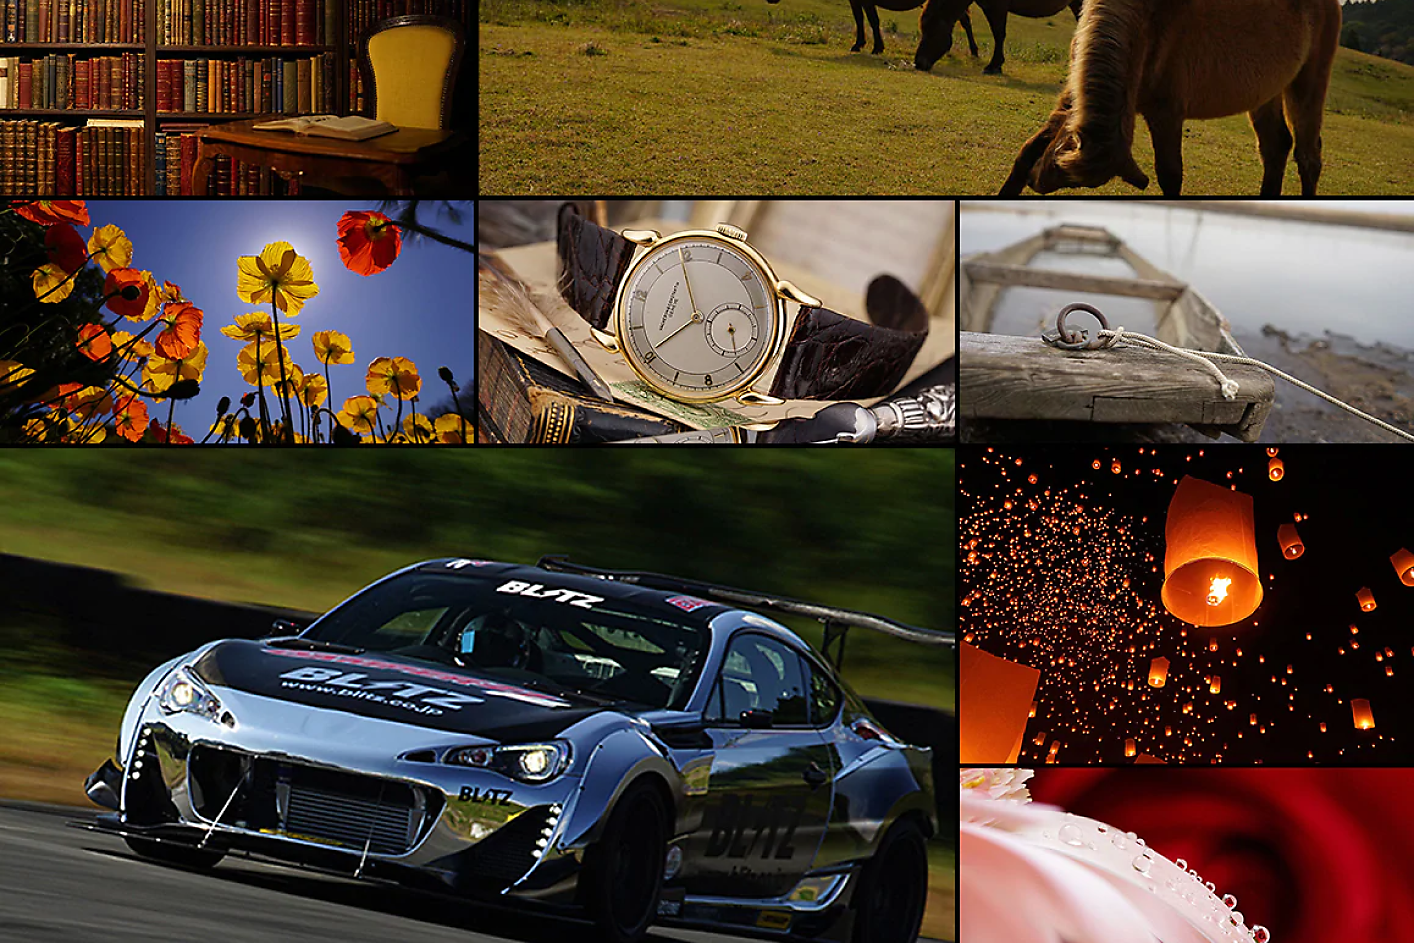 Farverig collage af otte billeder, herunder en racerbil, hest, ur og blomster